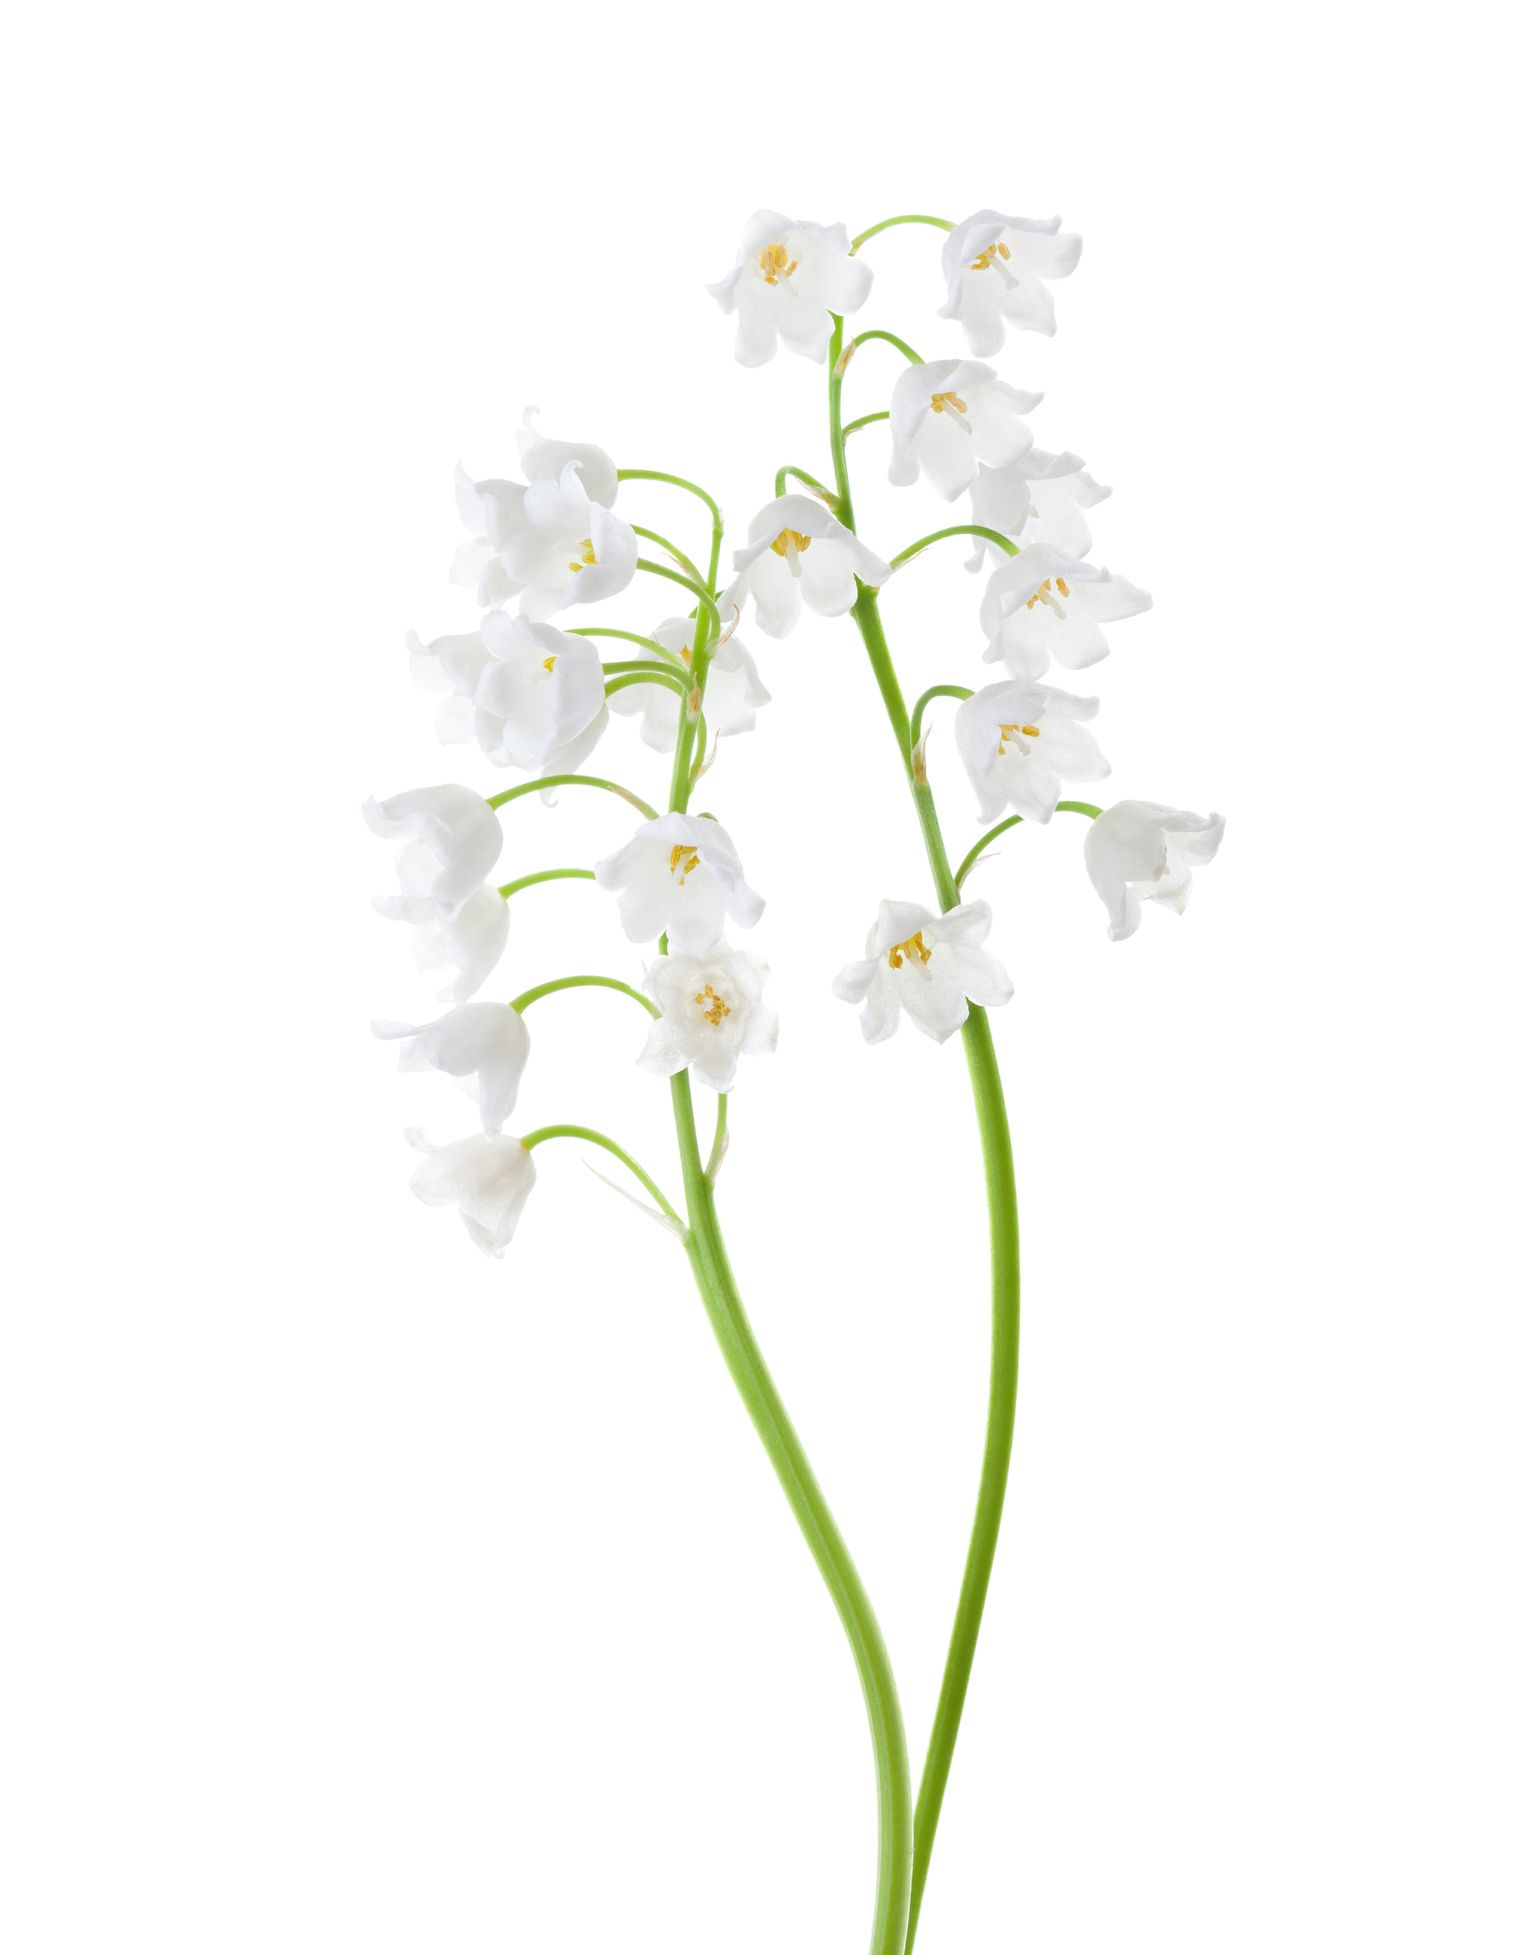 Հովտի սպիտակ շուշան ծաղիկ